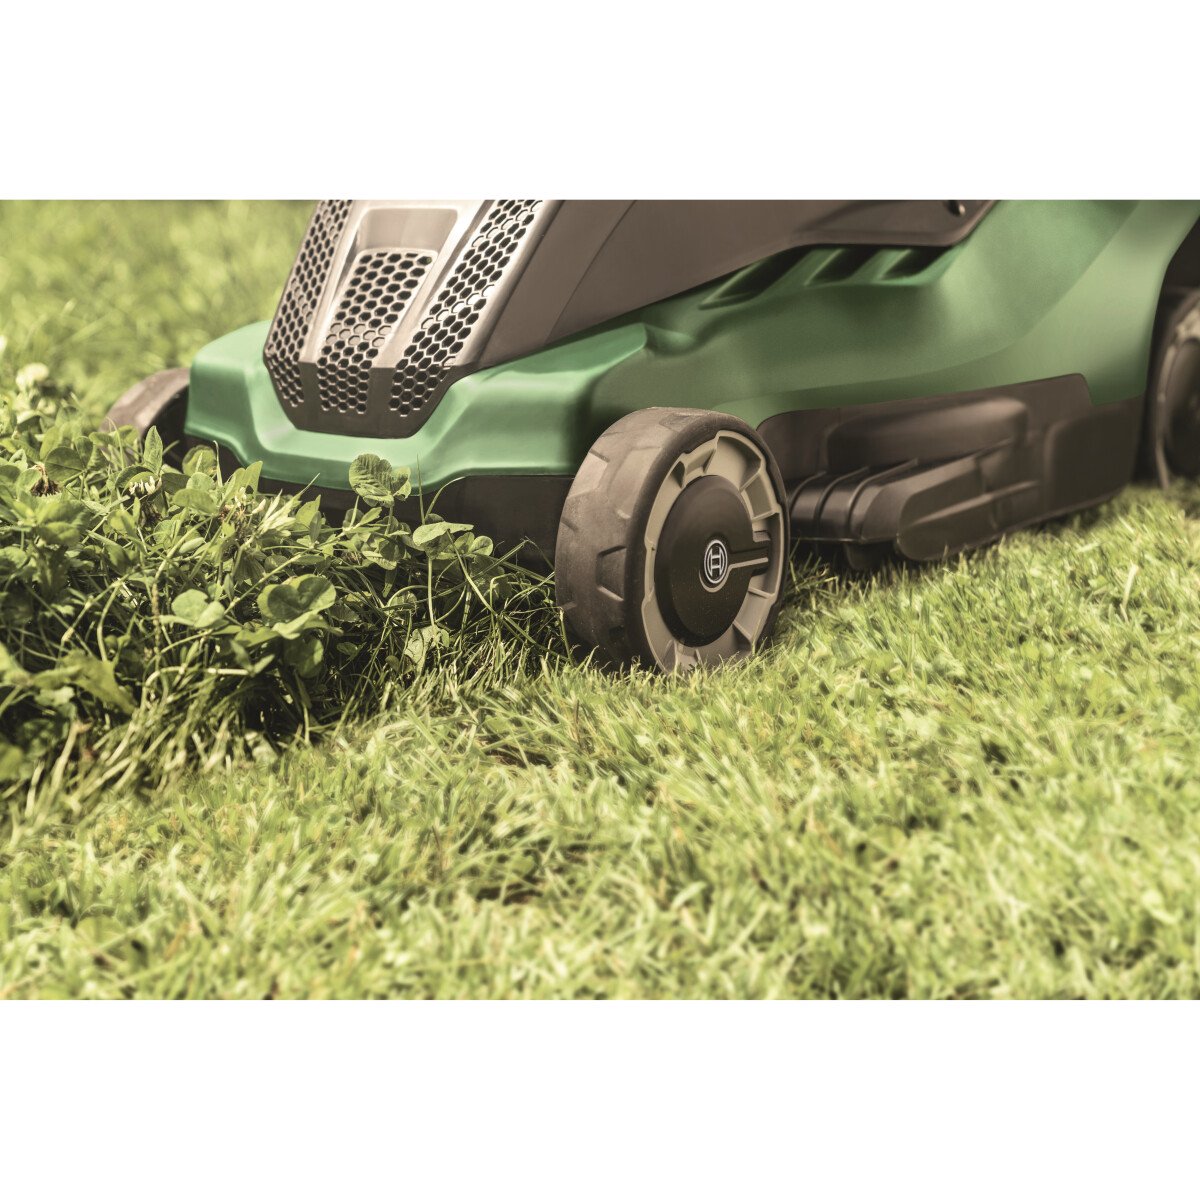 Bosch AdvancedRotak 750 1700W Lawn Mower 45cm Cut from Lawson HIS